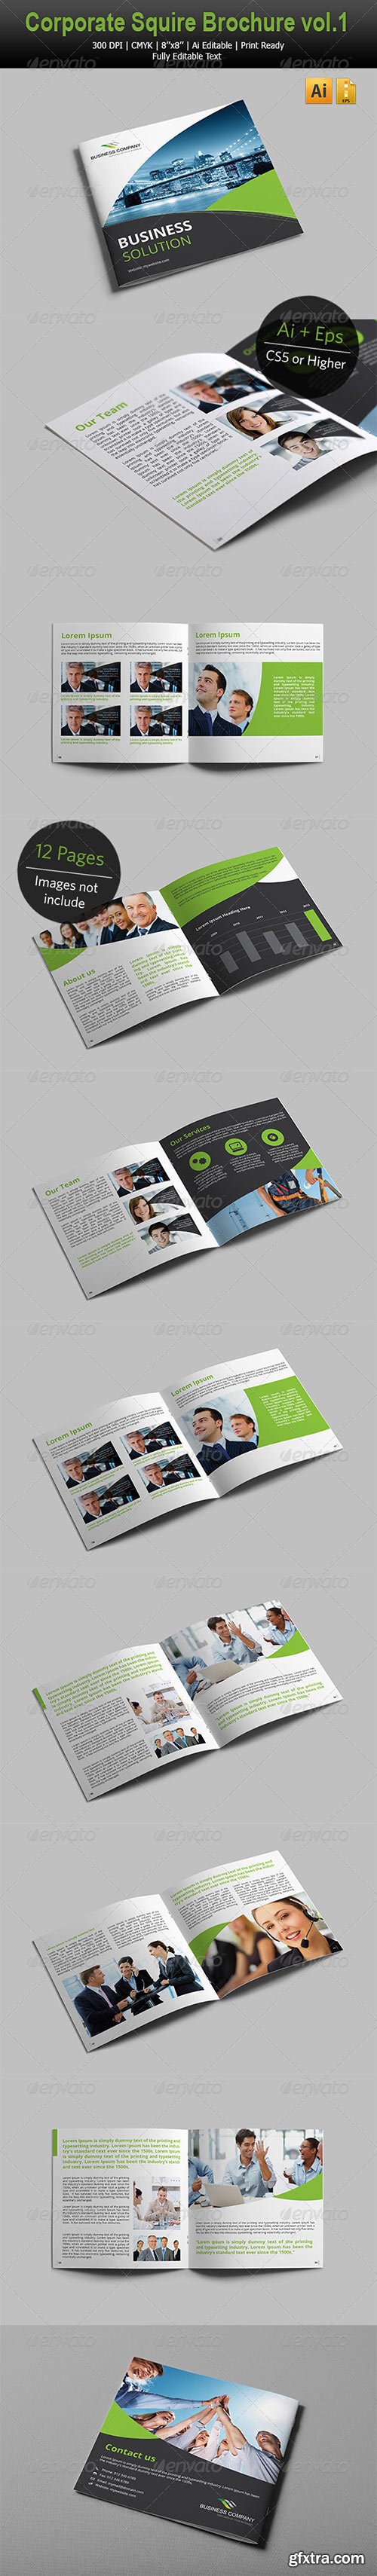 GraphicRiver - Corporate Square Brochure vol.1